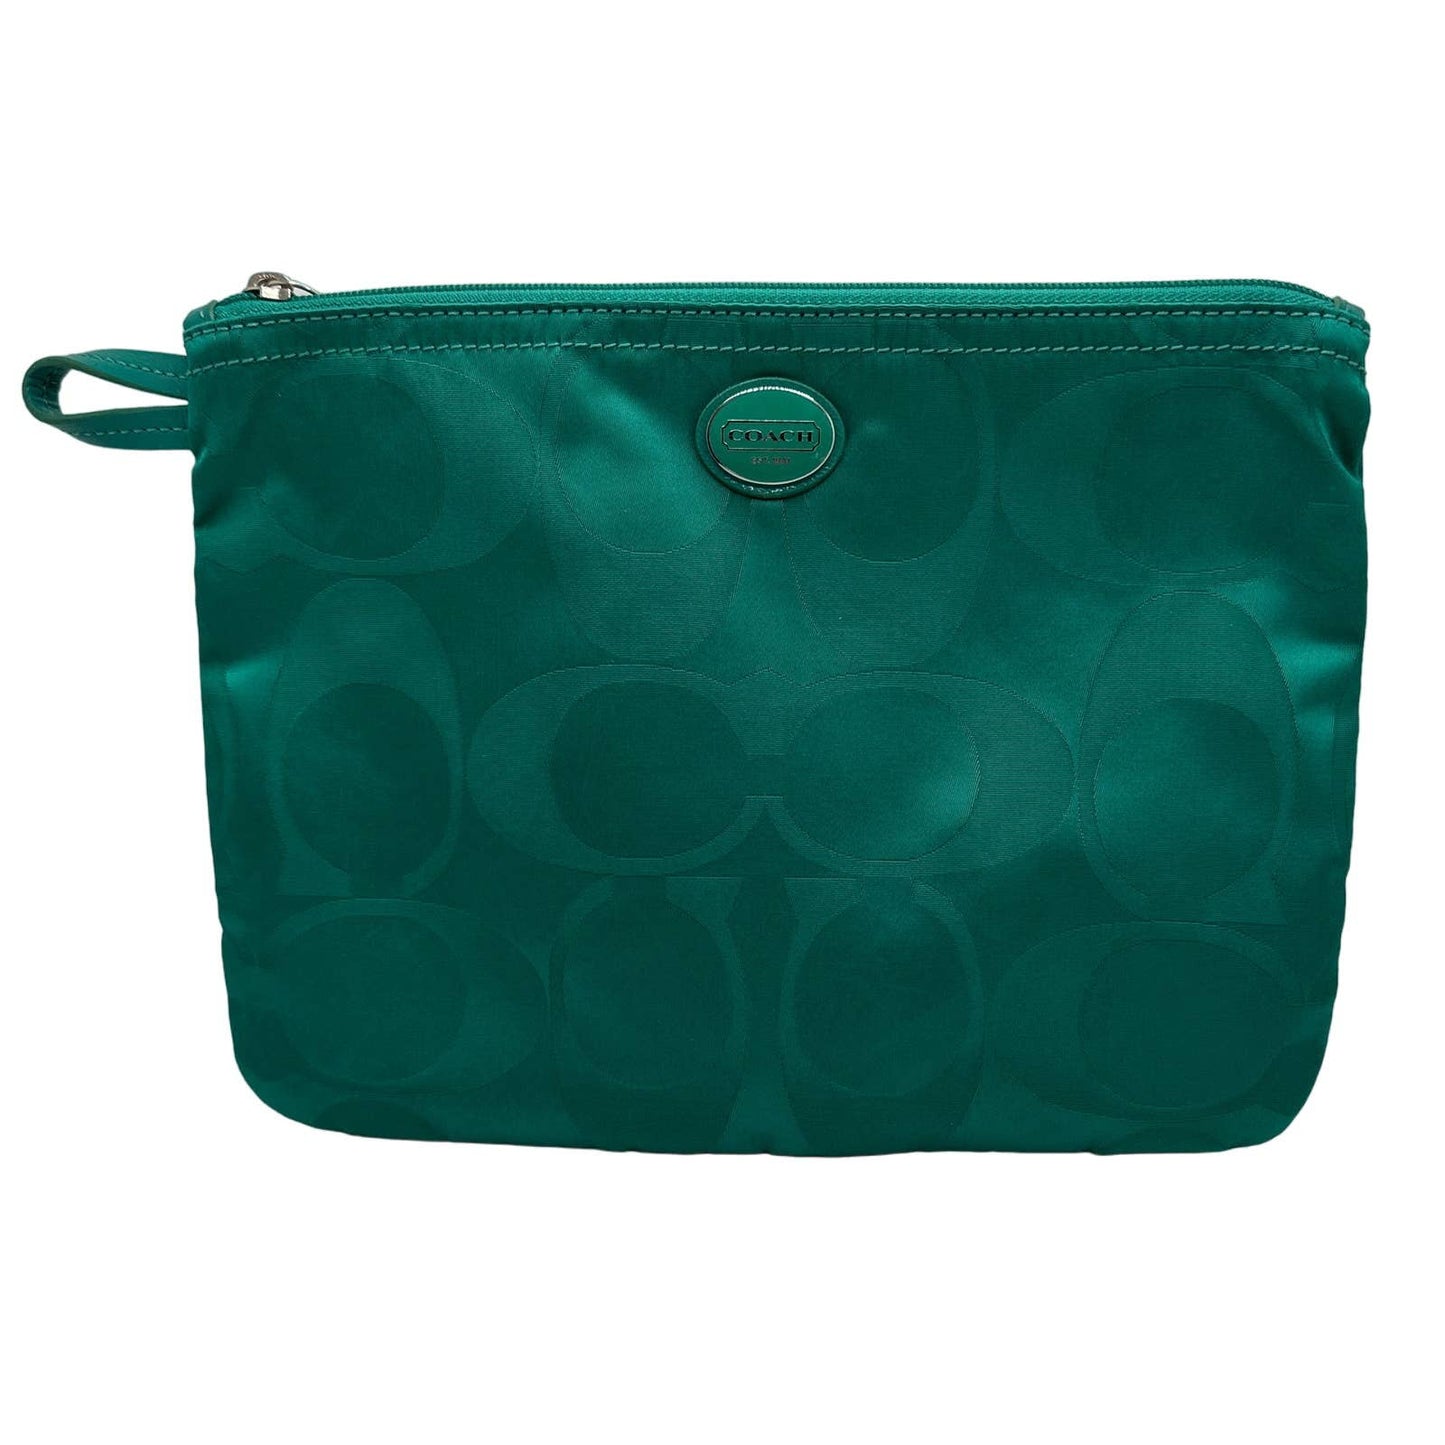 COACH Green Nylon Cosmetic Case / Makeup Bag